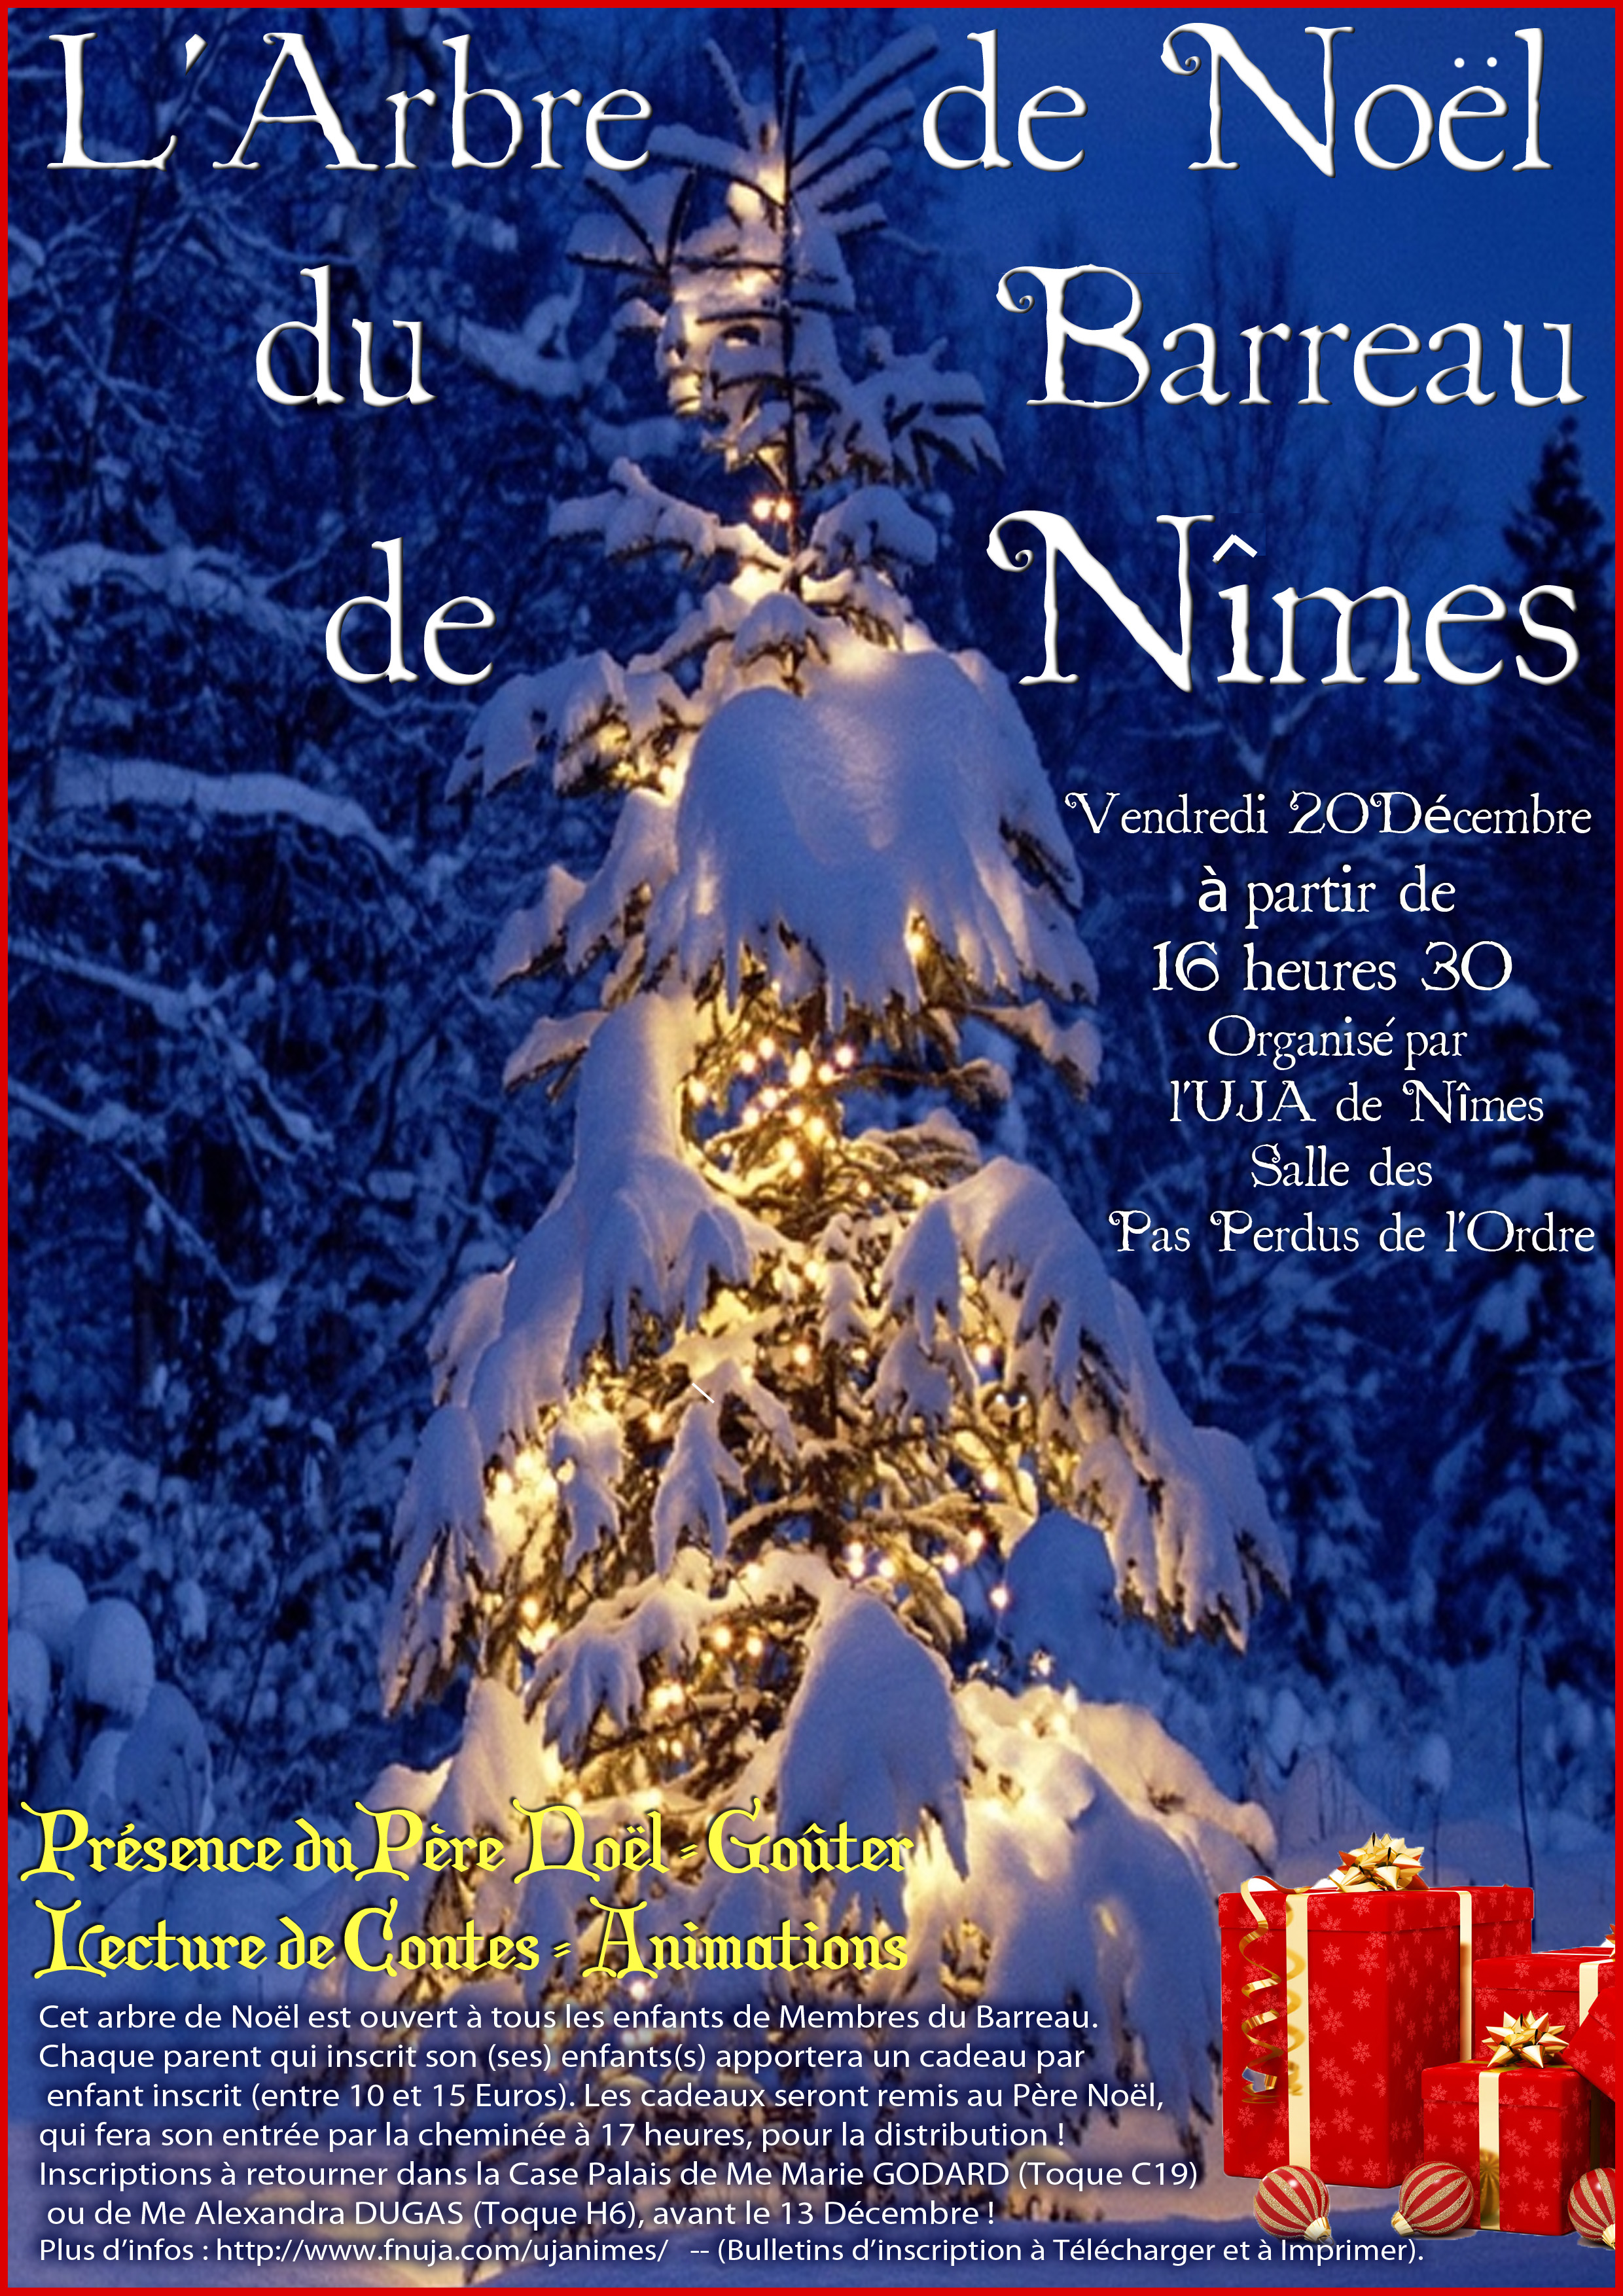 L'Arbre de Noël 2013 du Barreau de Nîmes